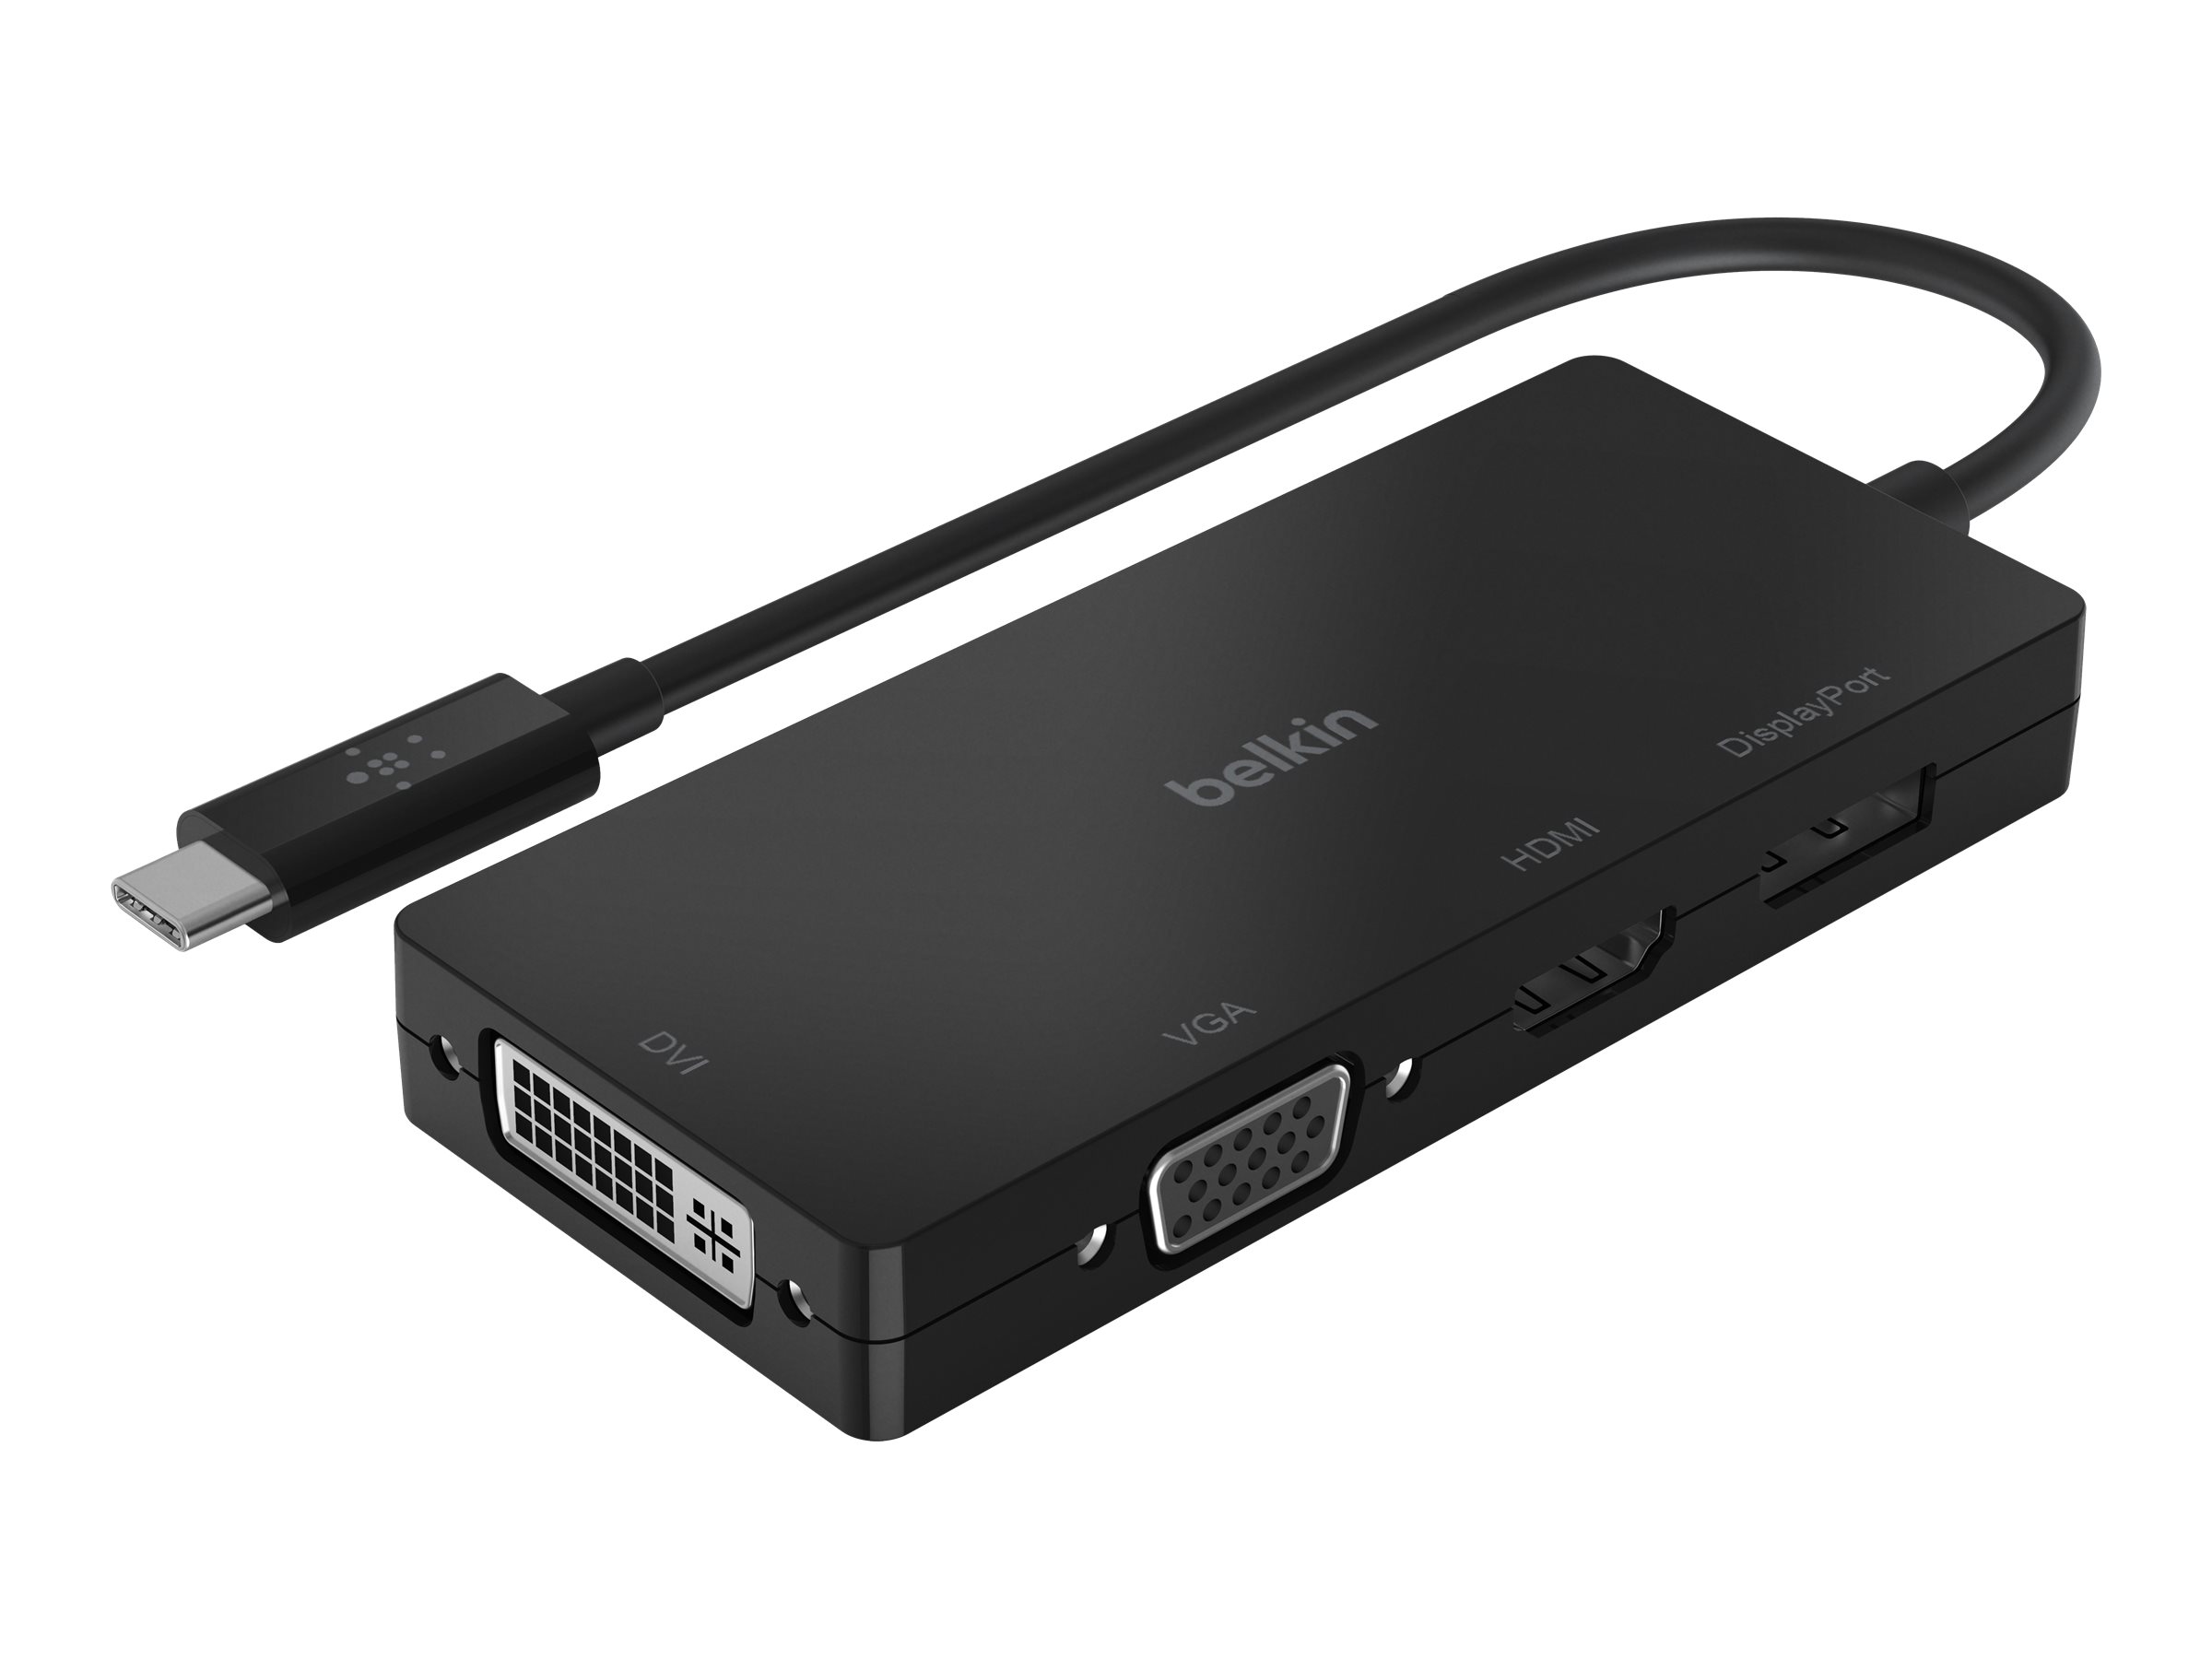 Belkin - Videoadapter - USB-C männlich zu HD-15 (VGA), DVI-I, HDMI, DisplayPort weiblich - Schwarz - 4K Unterstützung